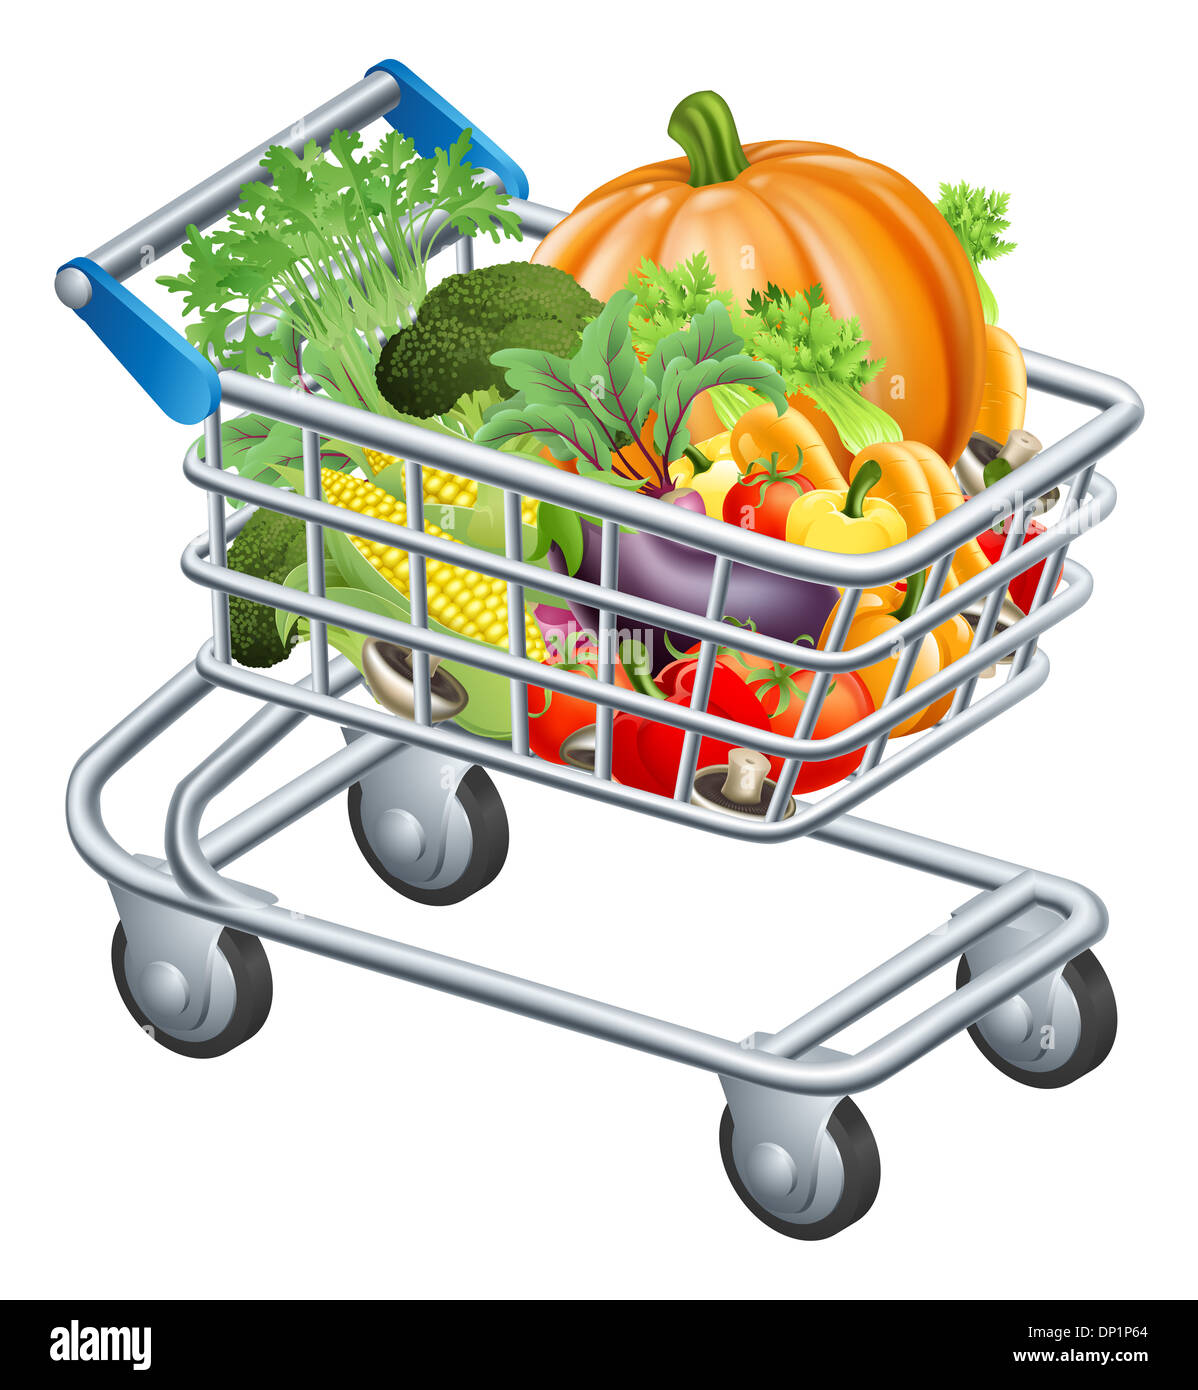 Une illustration d'un chariot de supermarché ou chariot plein de frais sain matières d'épicerie, fruits et légumes Banque D'Images